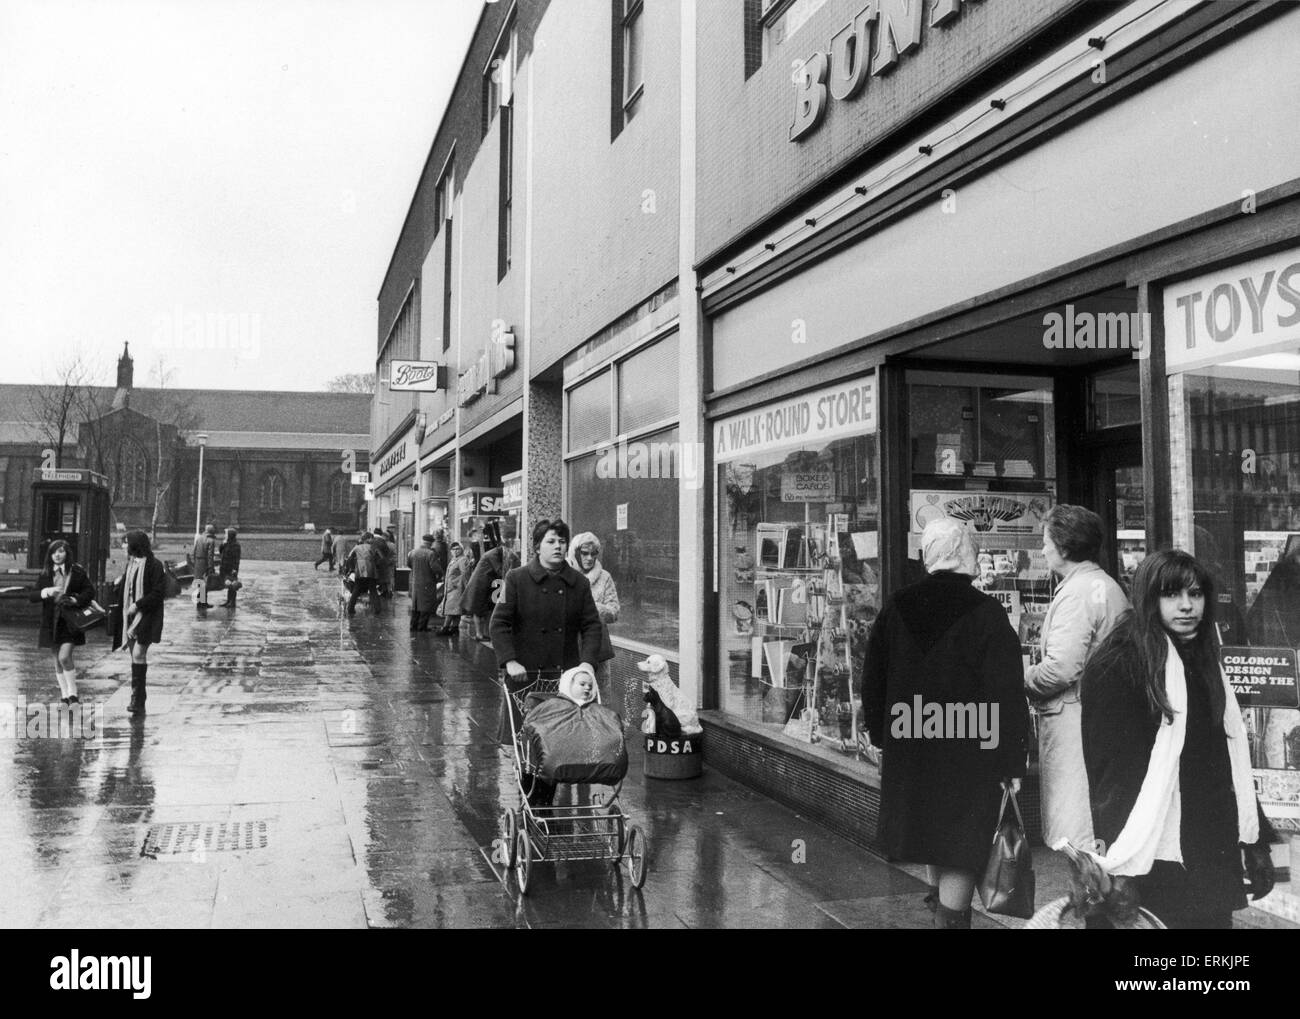 Market Place, Bedworth el 8 de enero de 1971 Foto de stock